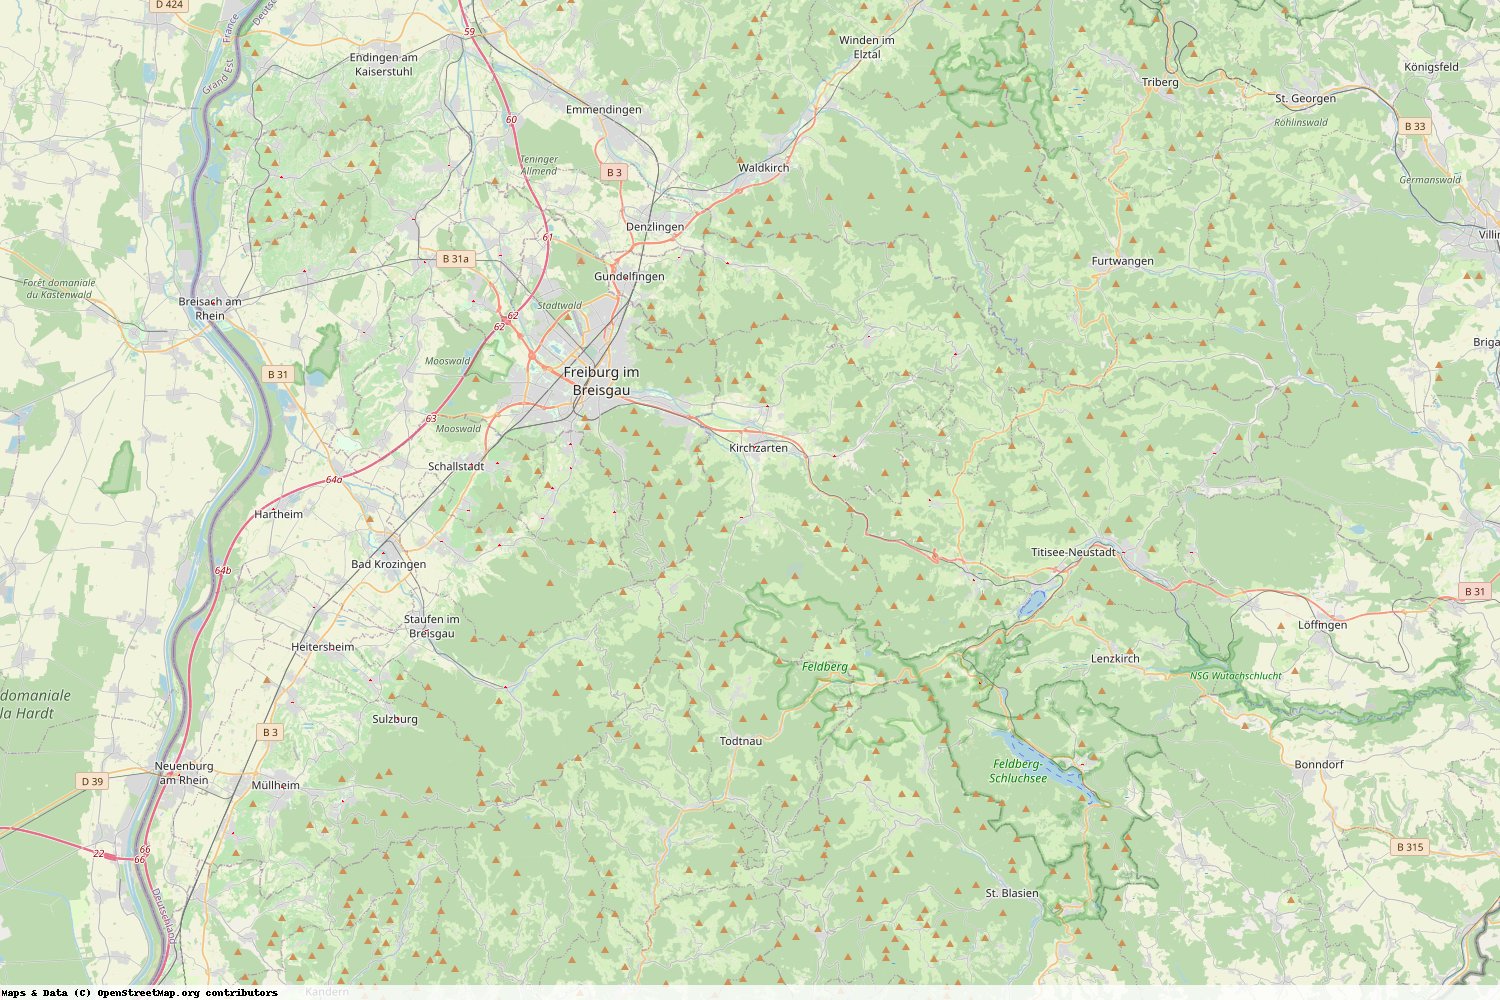 Ist gerade Stromausfall in Baden-Württemberg - Breisgau-Hochschwarzwald?